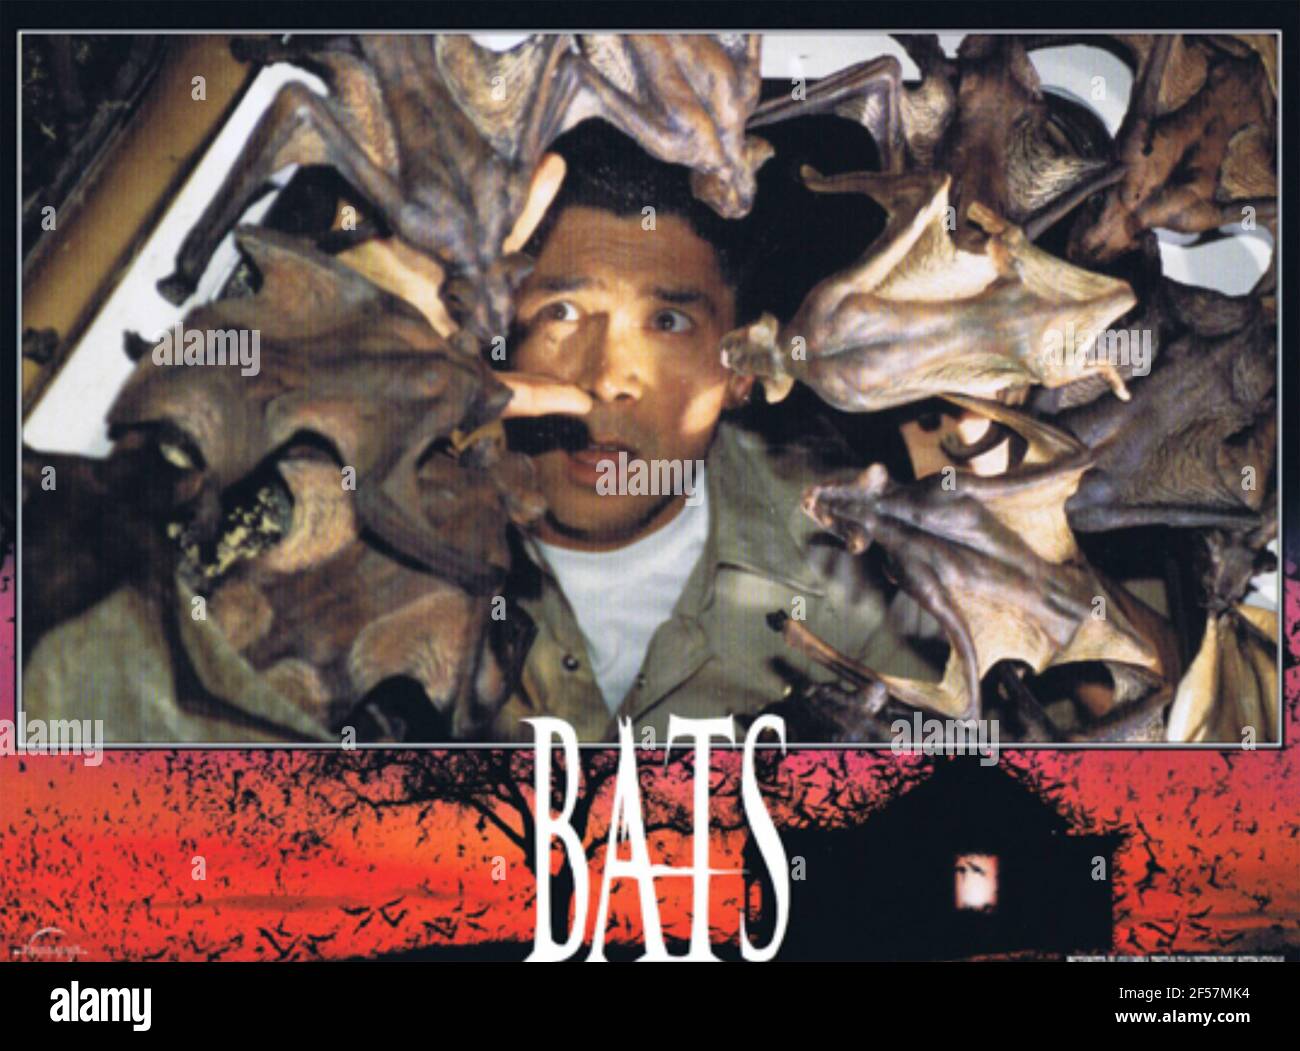 FILM BATS 1999 Columbia/TriStar con Lou Diamond Phillips Foto Stock